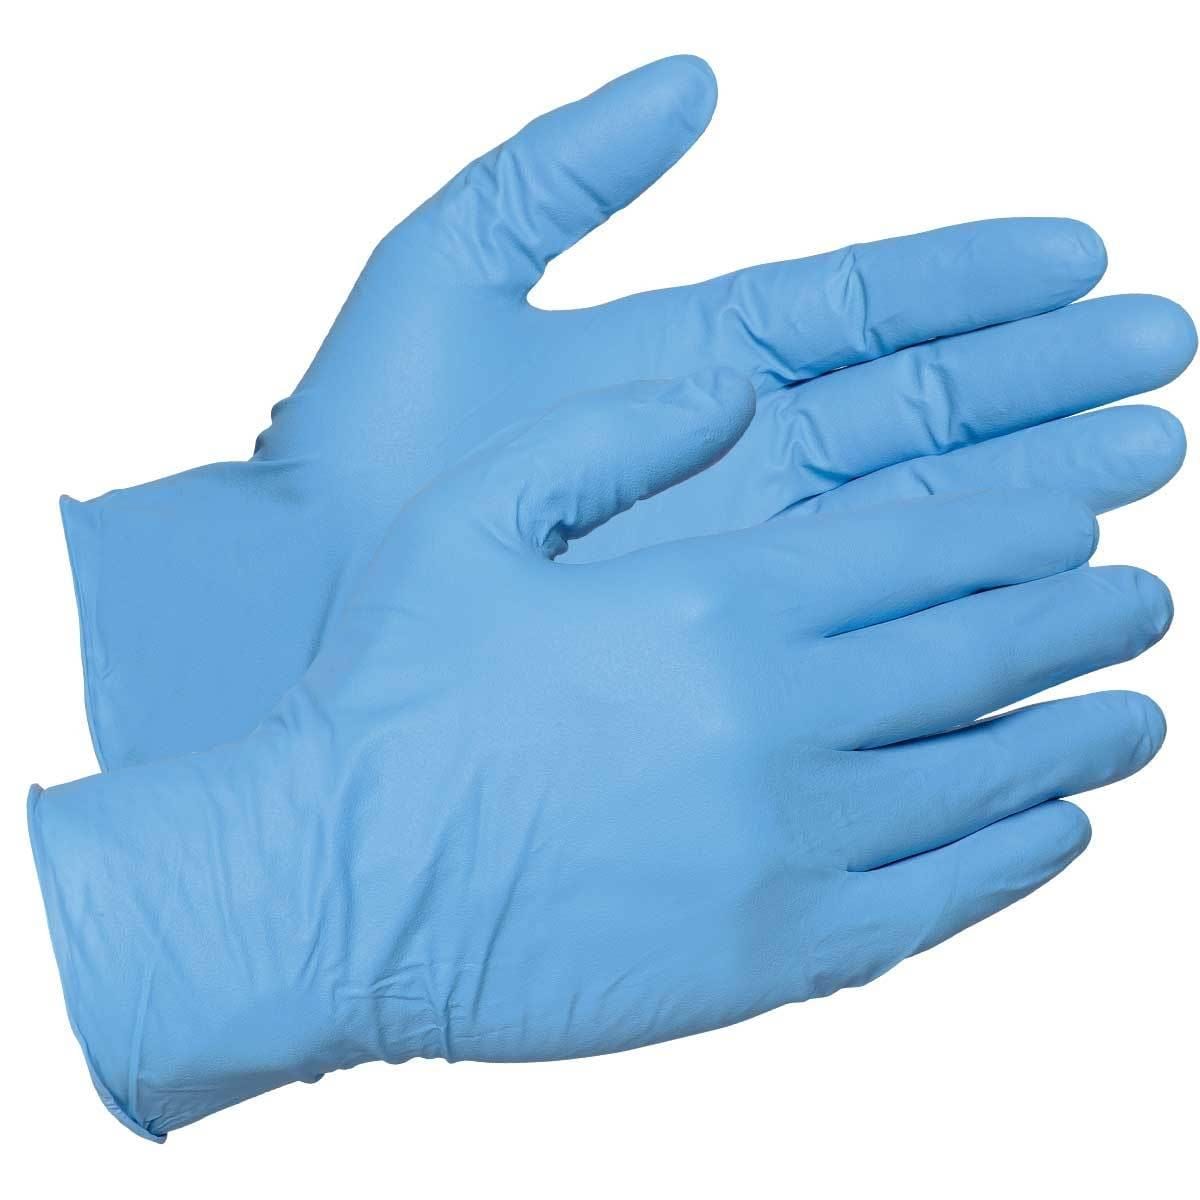 Gemplers 8-mil Disposable Nitrile Gloves | Bulk Bag of 250 Gloves